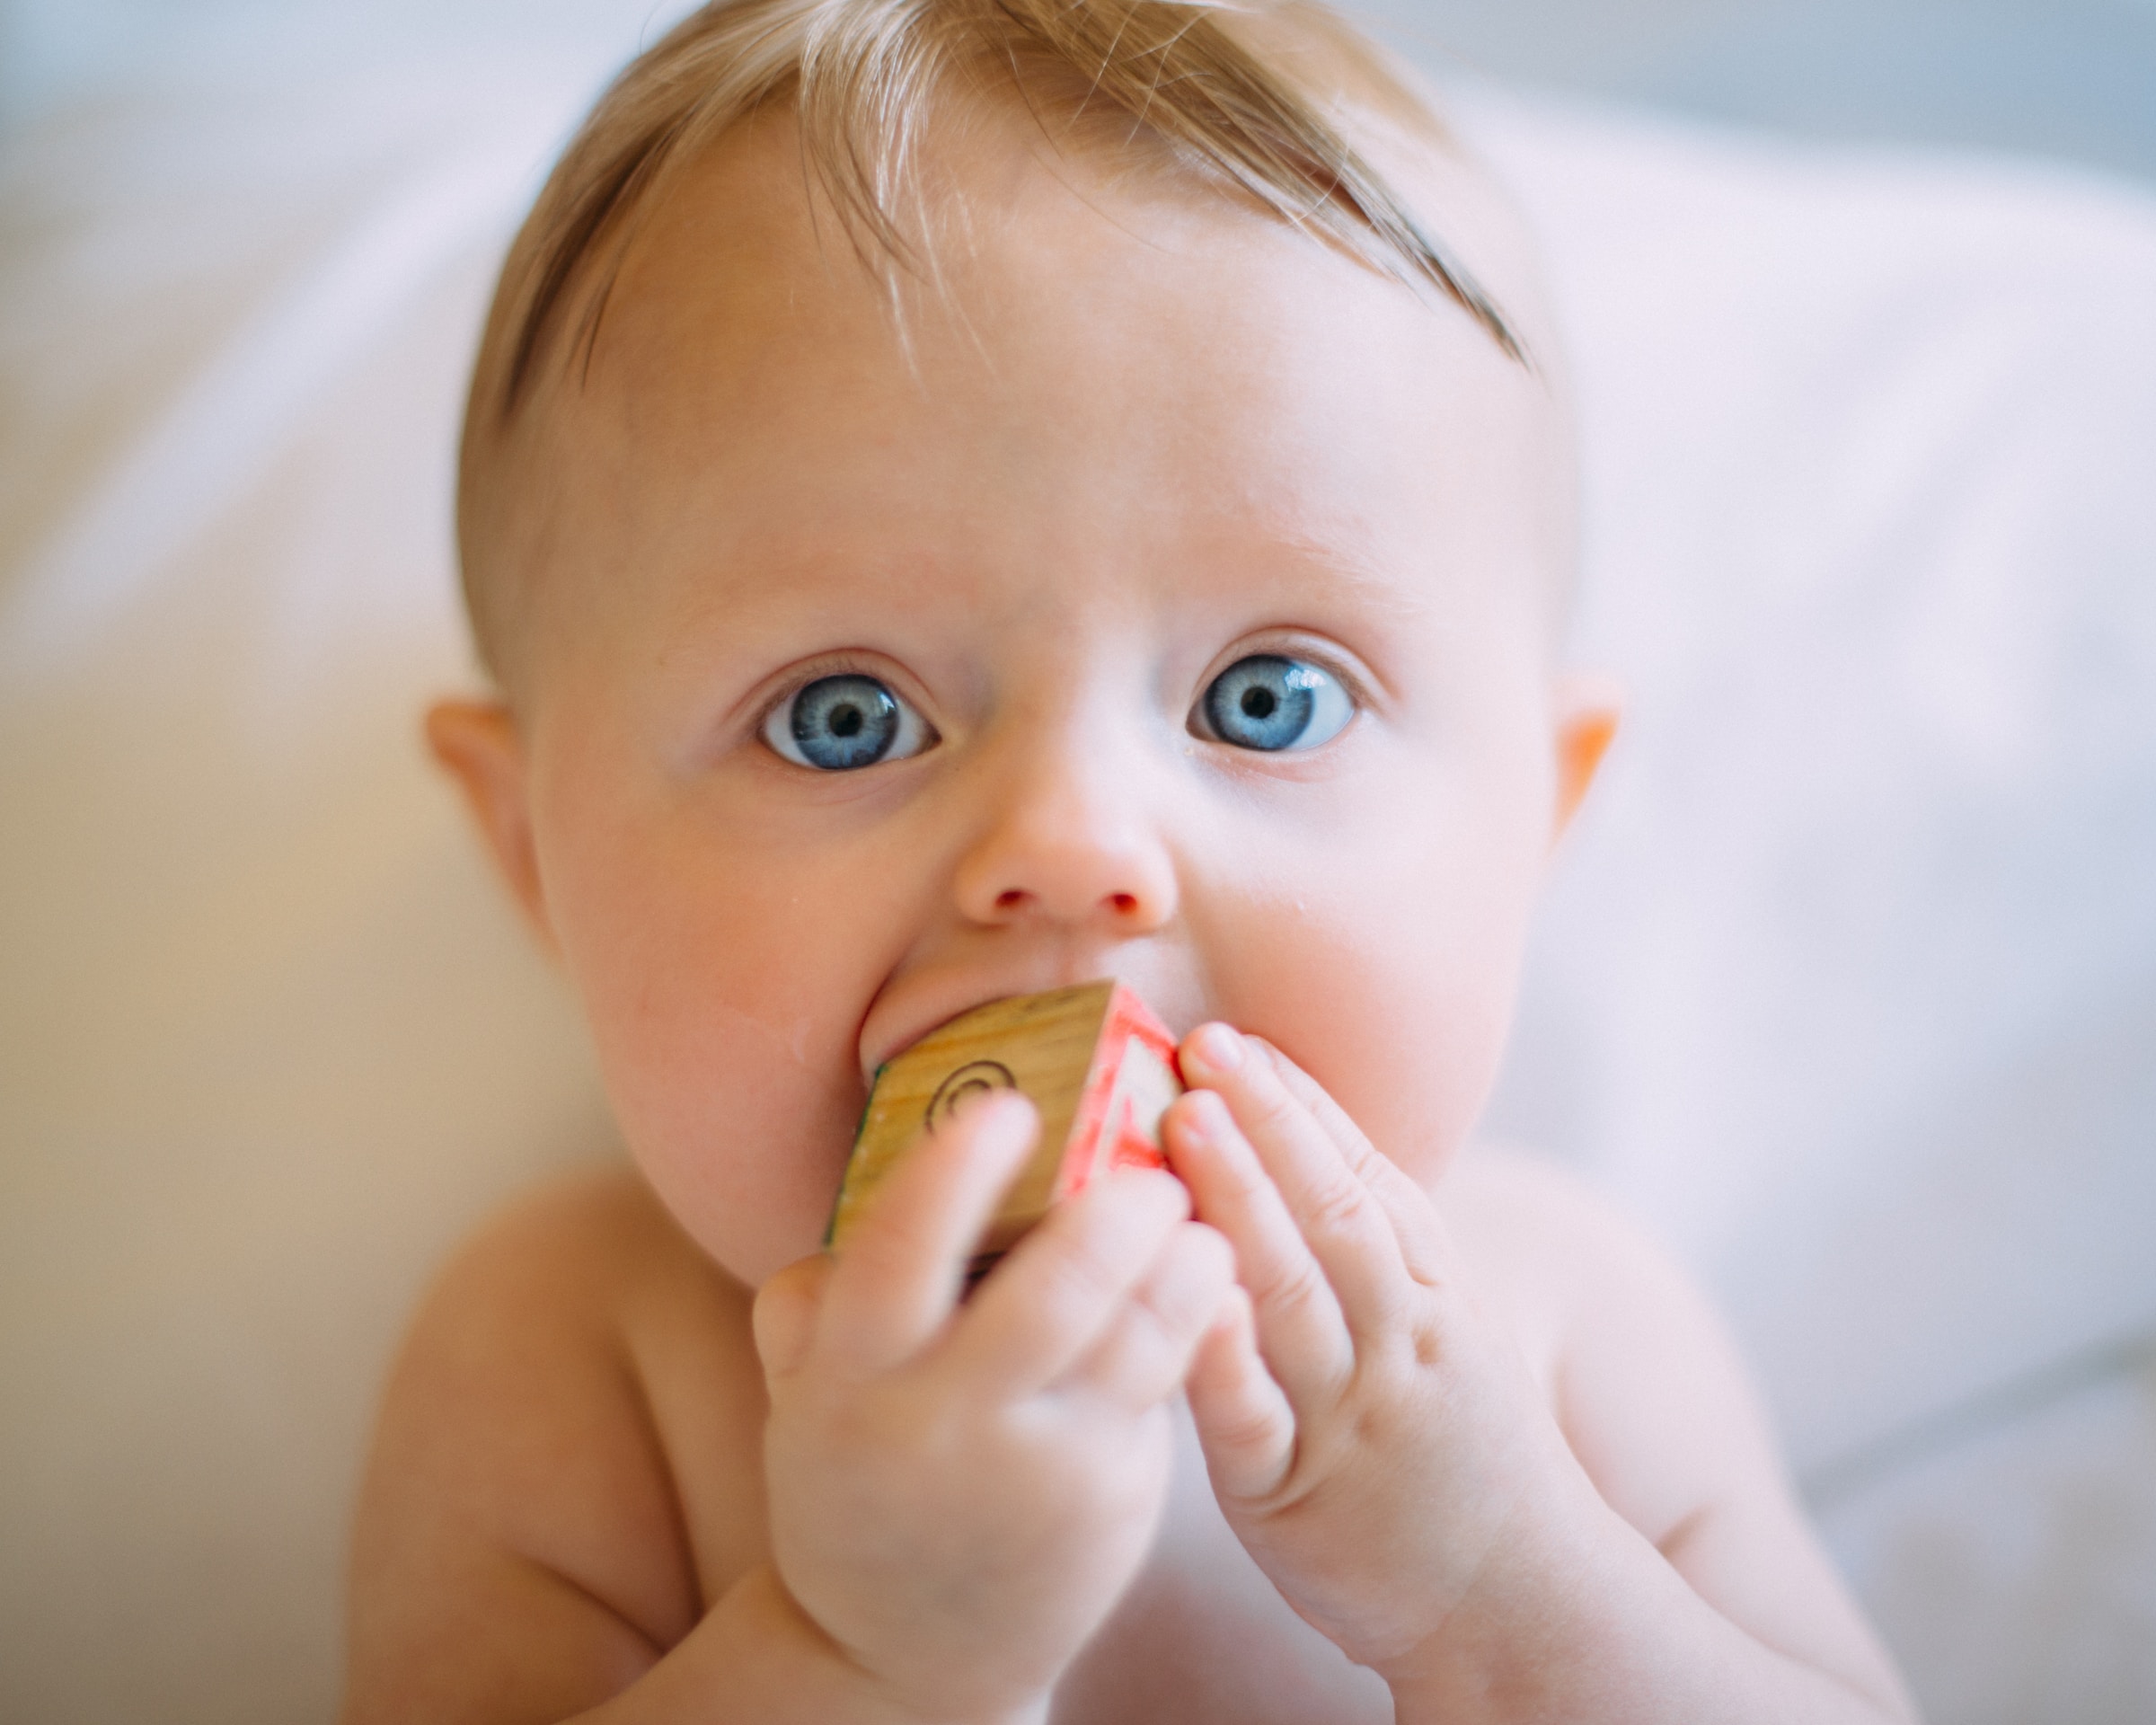 Bébé aux yeux bleus. | Source : Unsplash